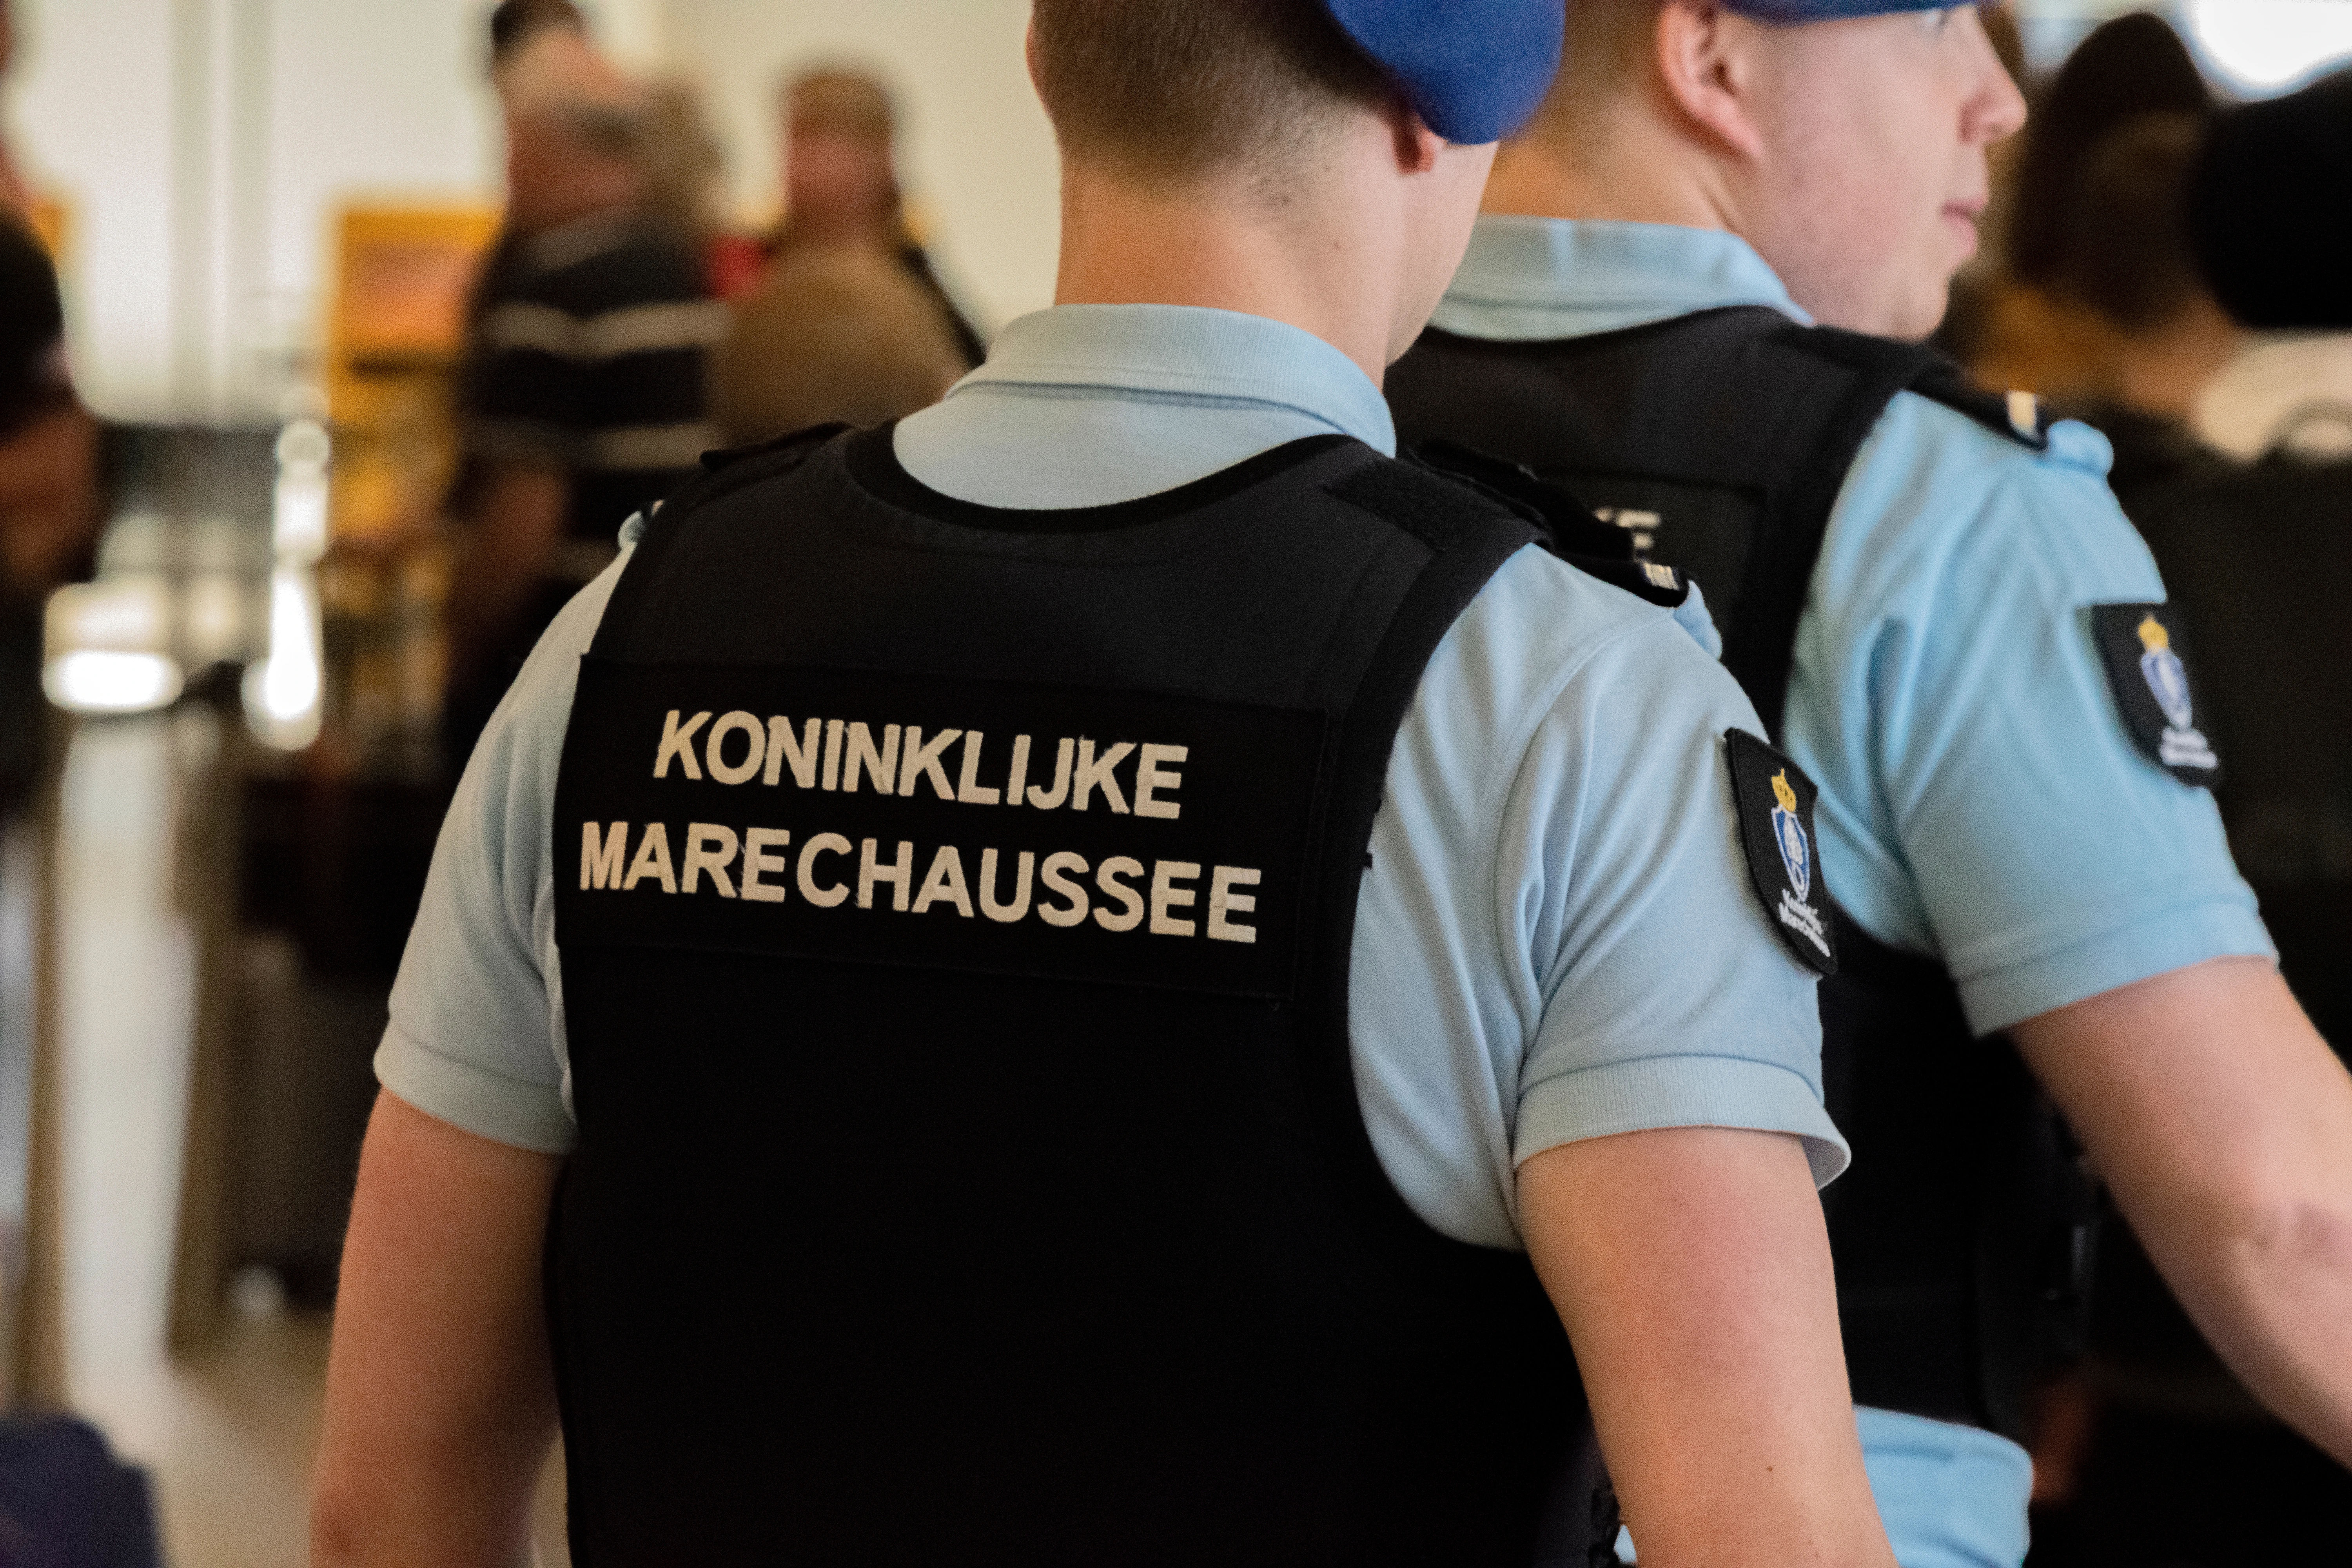 آیا از طریق فرودگاه اسخیپول در هلند رسیده اید یا از طریق یک بندر؟ سپس برای درخواست پناهندگی خود تان را به پلیس نظامی سلطنتی (KMar)معرفی میکنید.